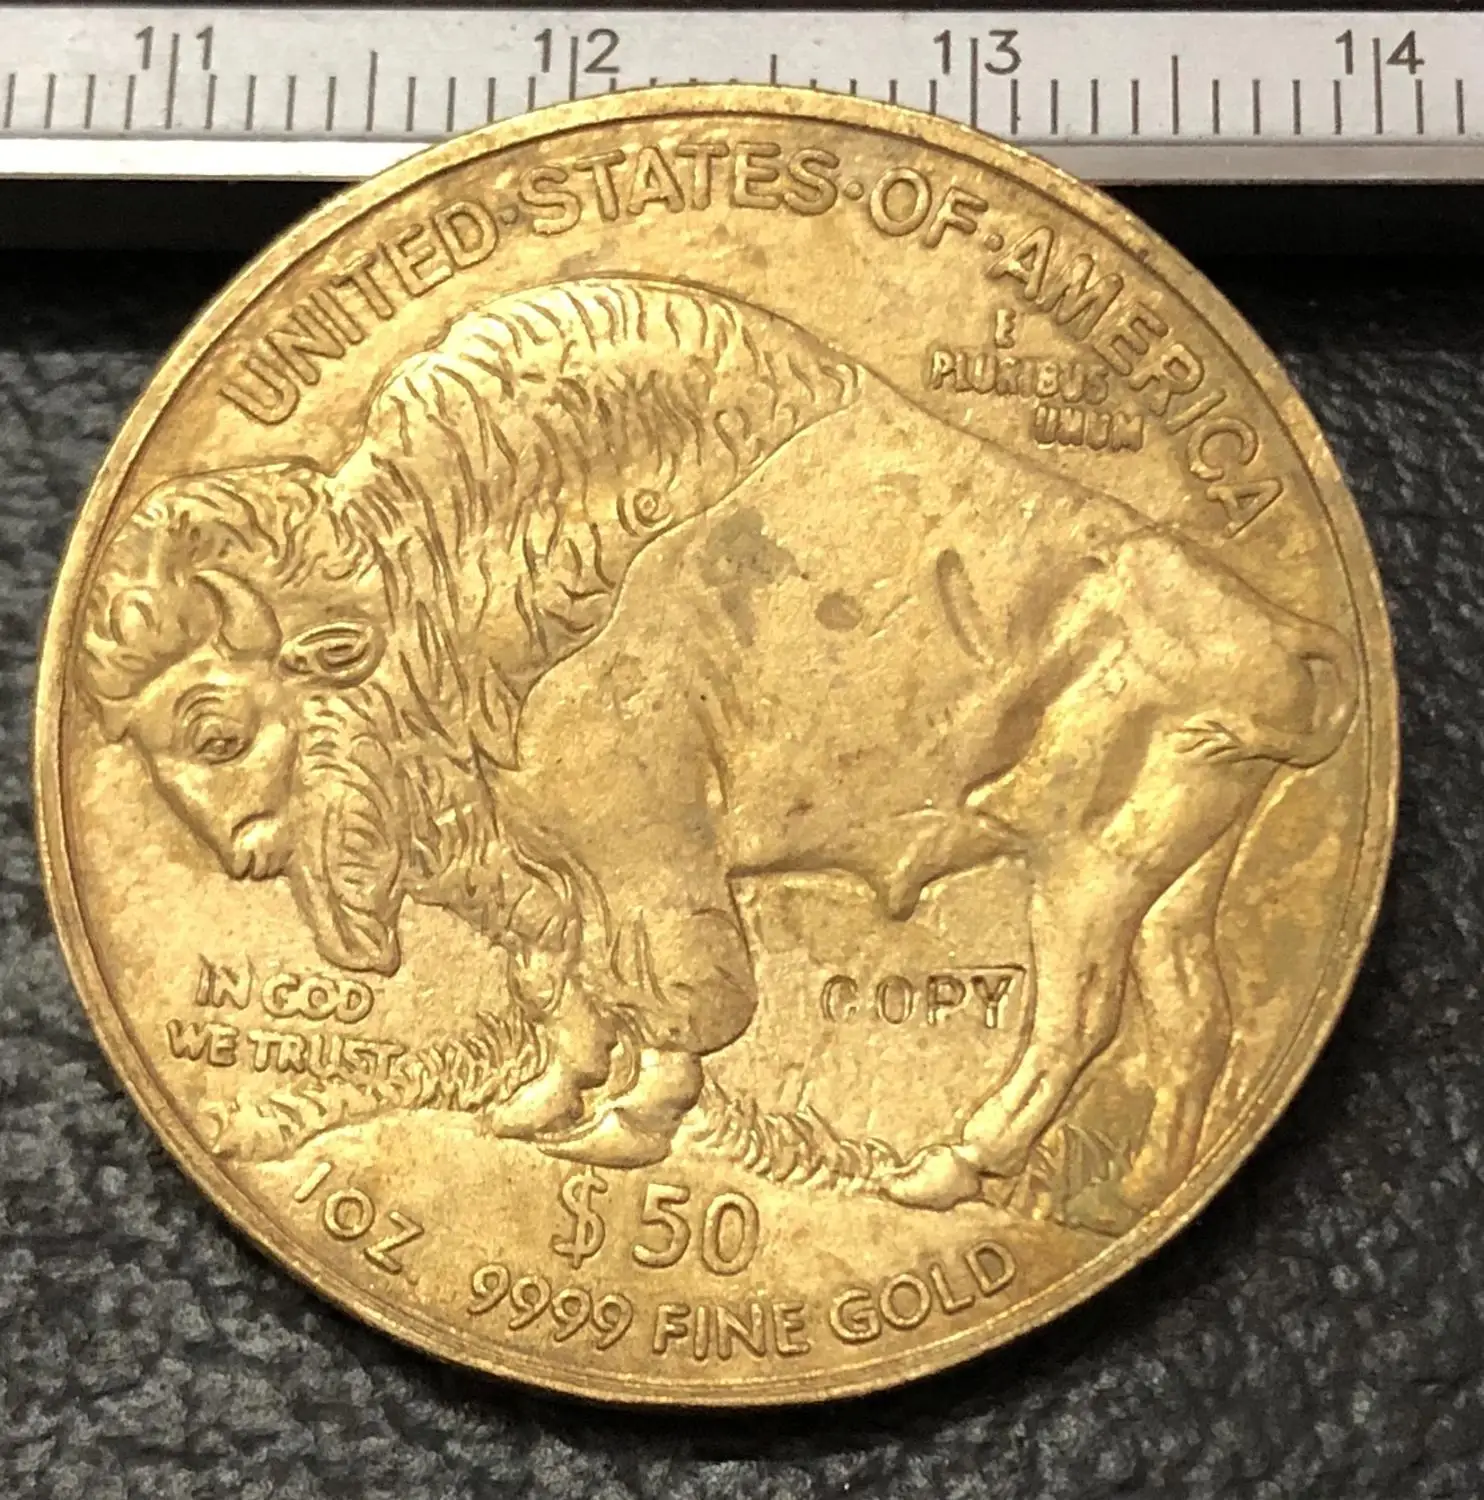 2008 Соединенные Штаты Buffalo Gold копия монеты